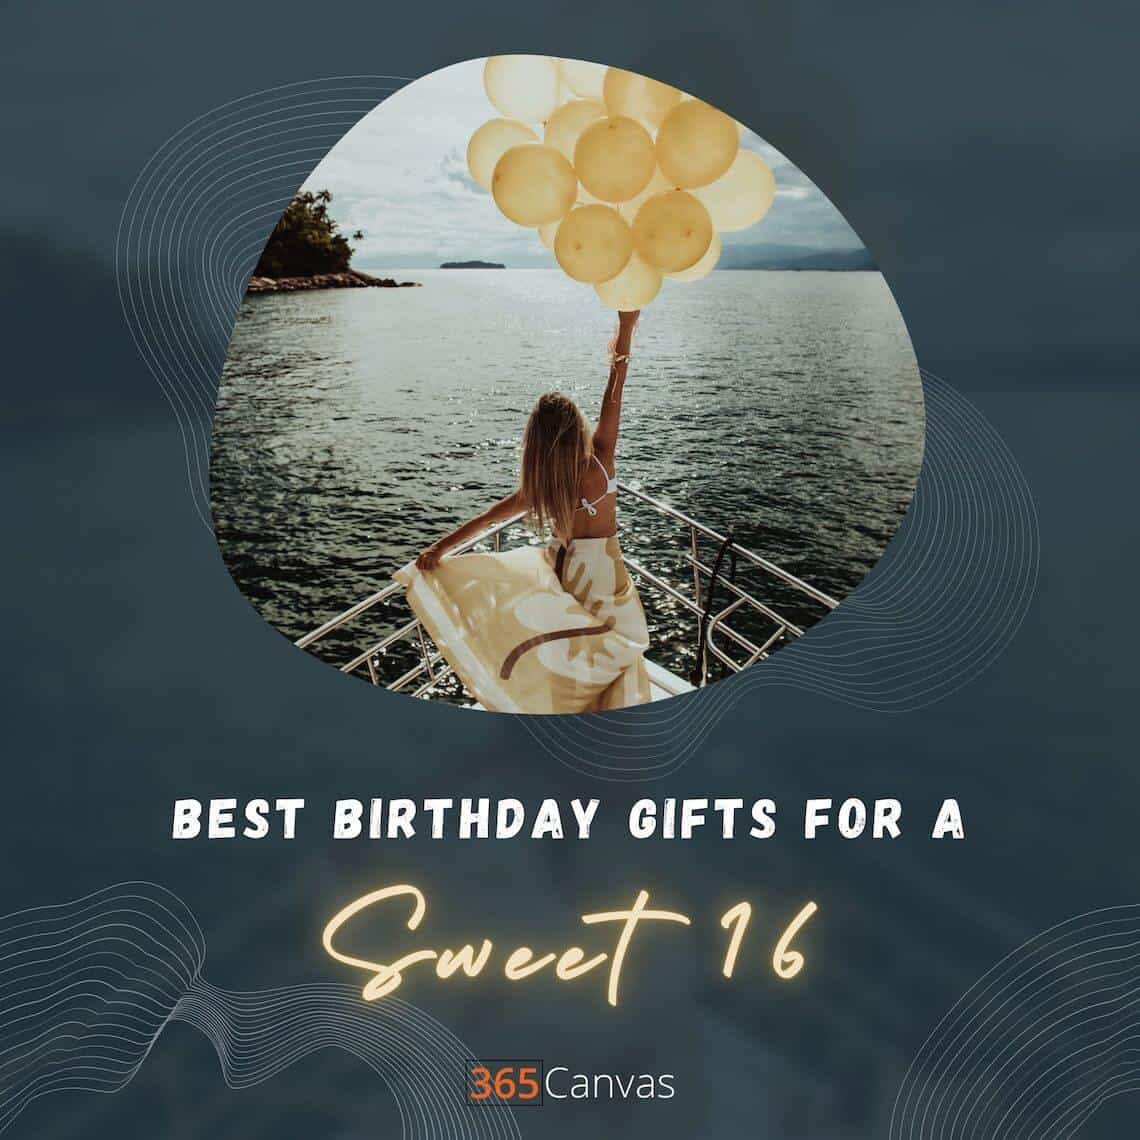 Sweet 16 Gifts: 32 идеи подарков на 16-летие Glam (2022)